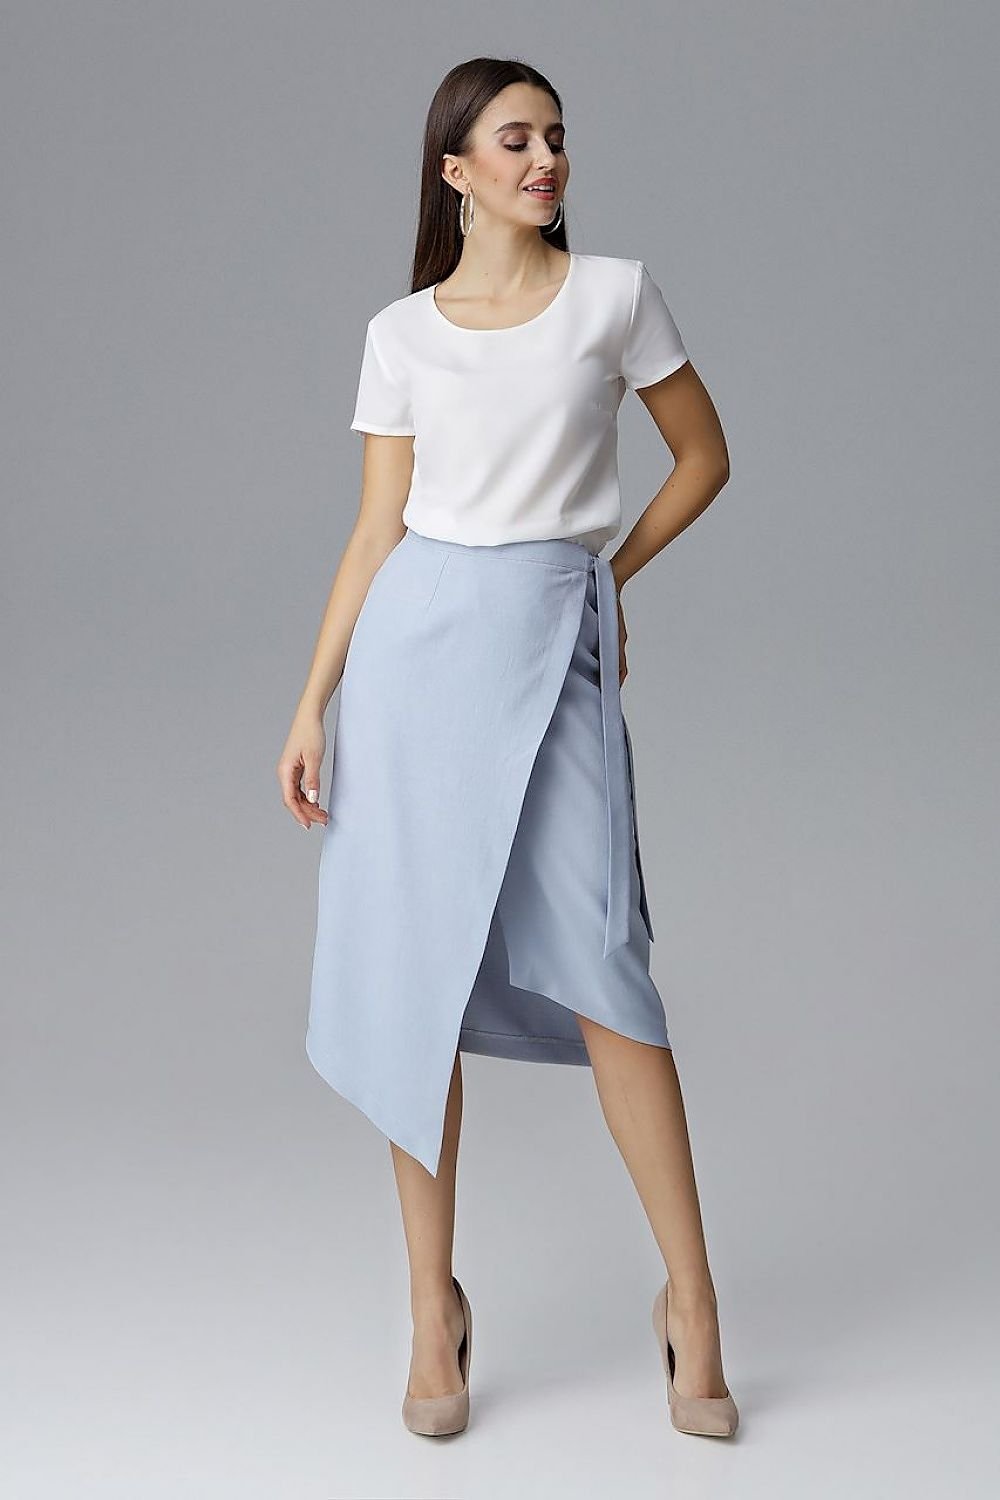 Jupe longue asymétrique bleue chic pour femme avec design moderne, parfaite pour un look élégant et tendance.